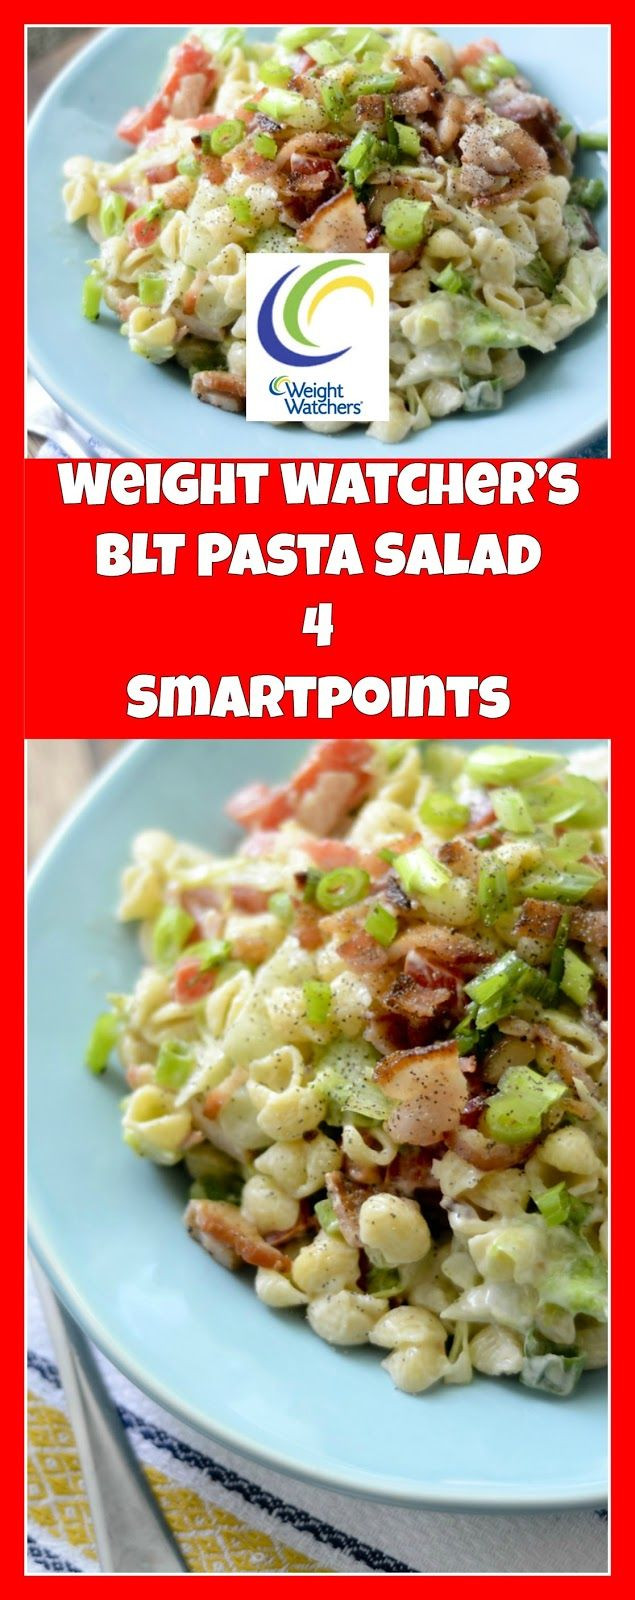 Weight Watchers Blt Pasta Salad
 Weight Watcher’s BLT Pasta Salad 5 Smartpoints